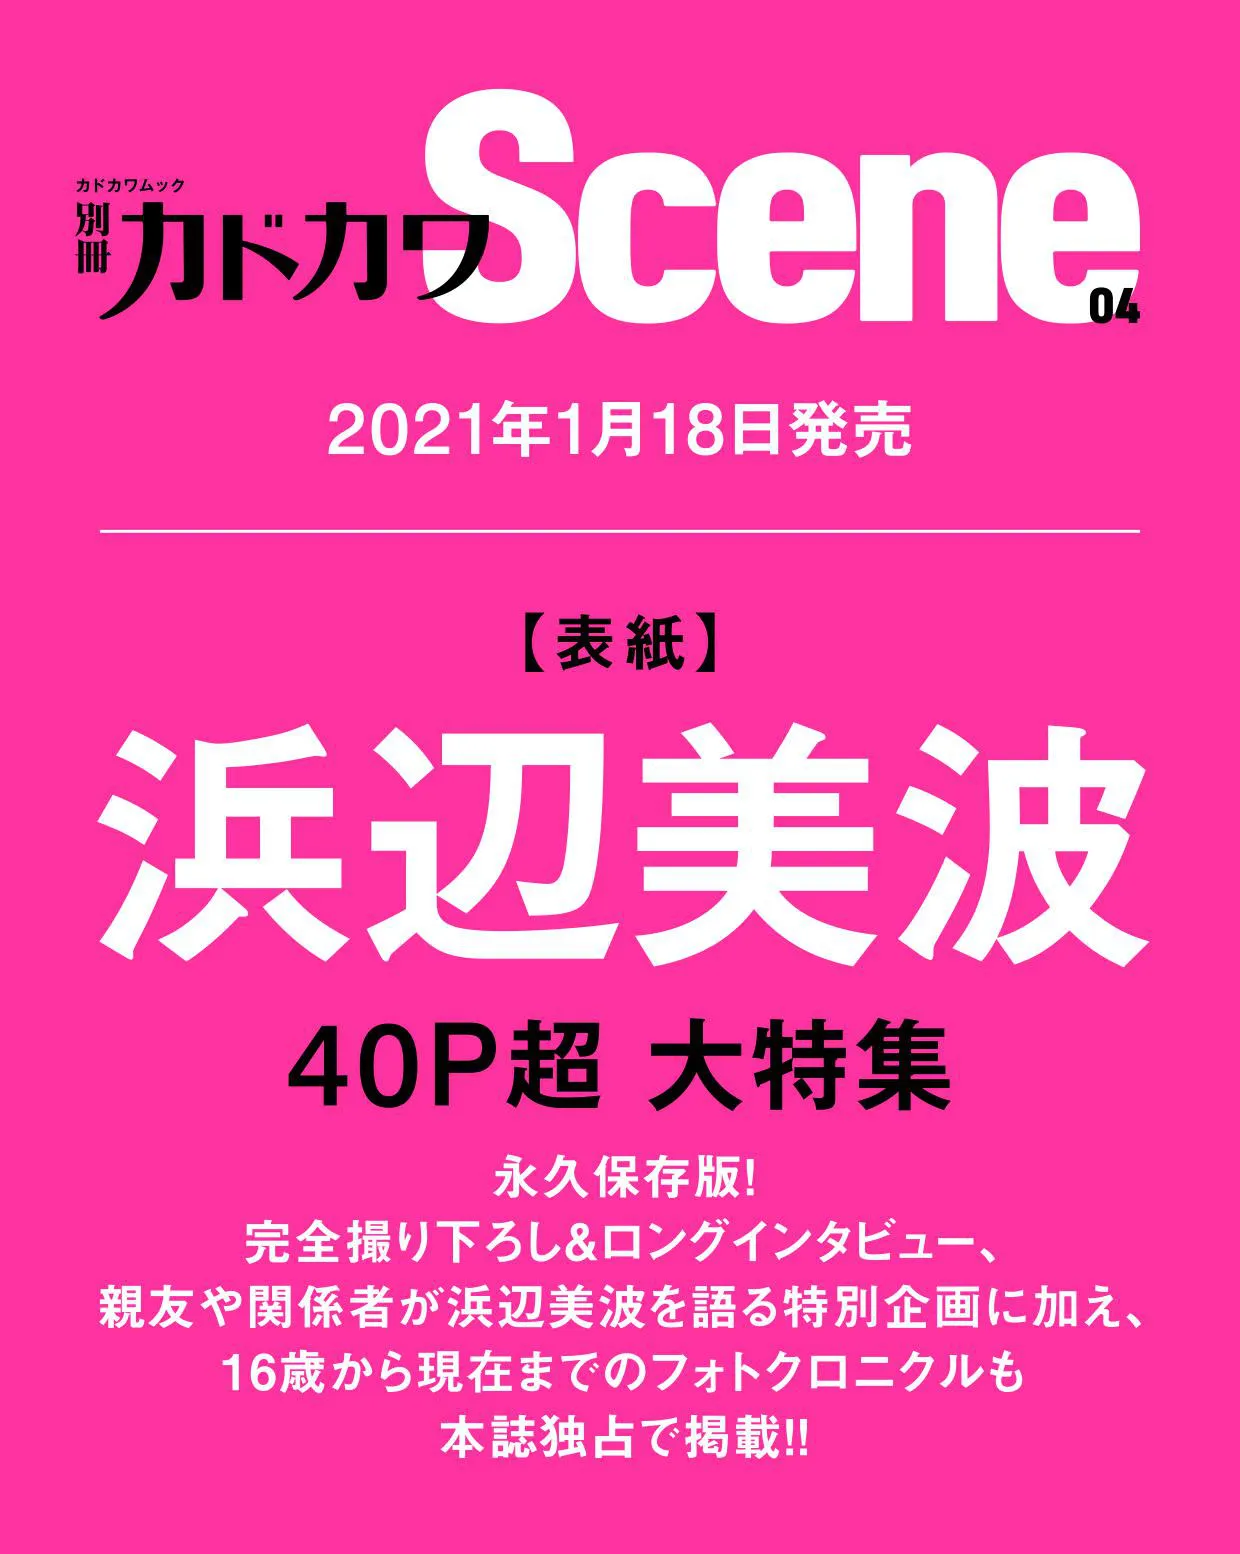 「別冊カドカワScene 04」は、2021年1月18日に発売